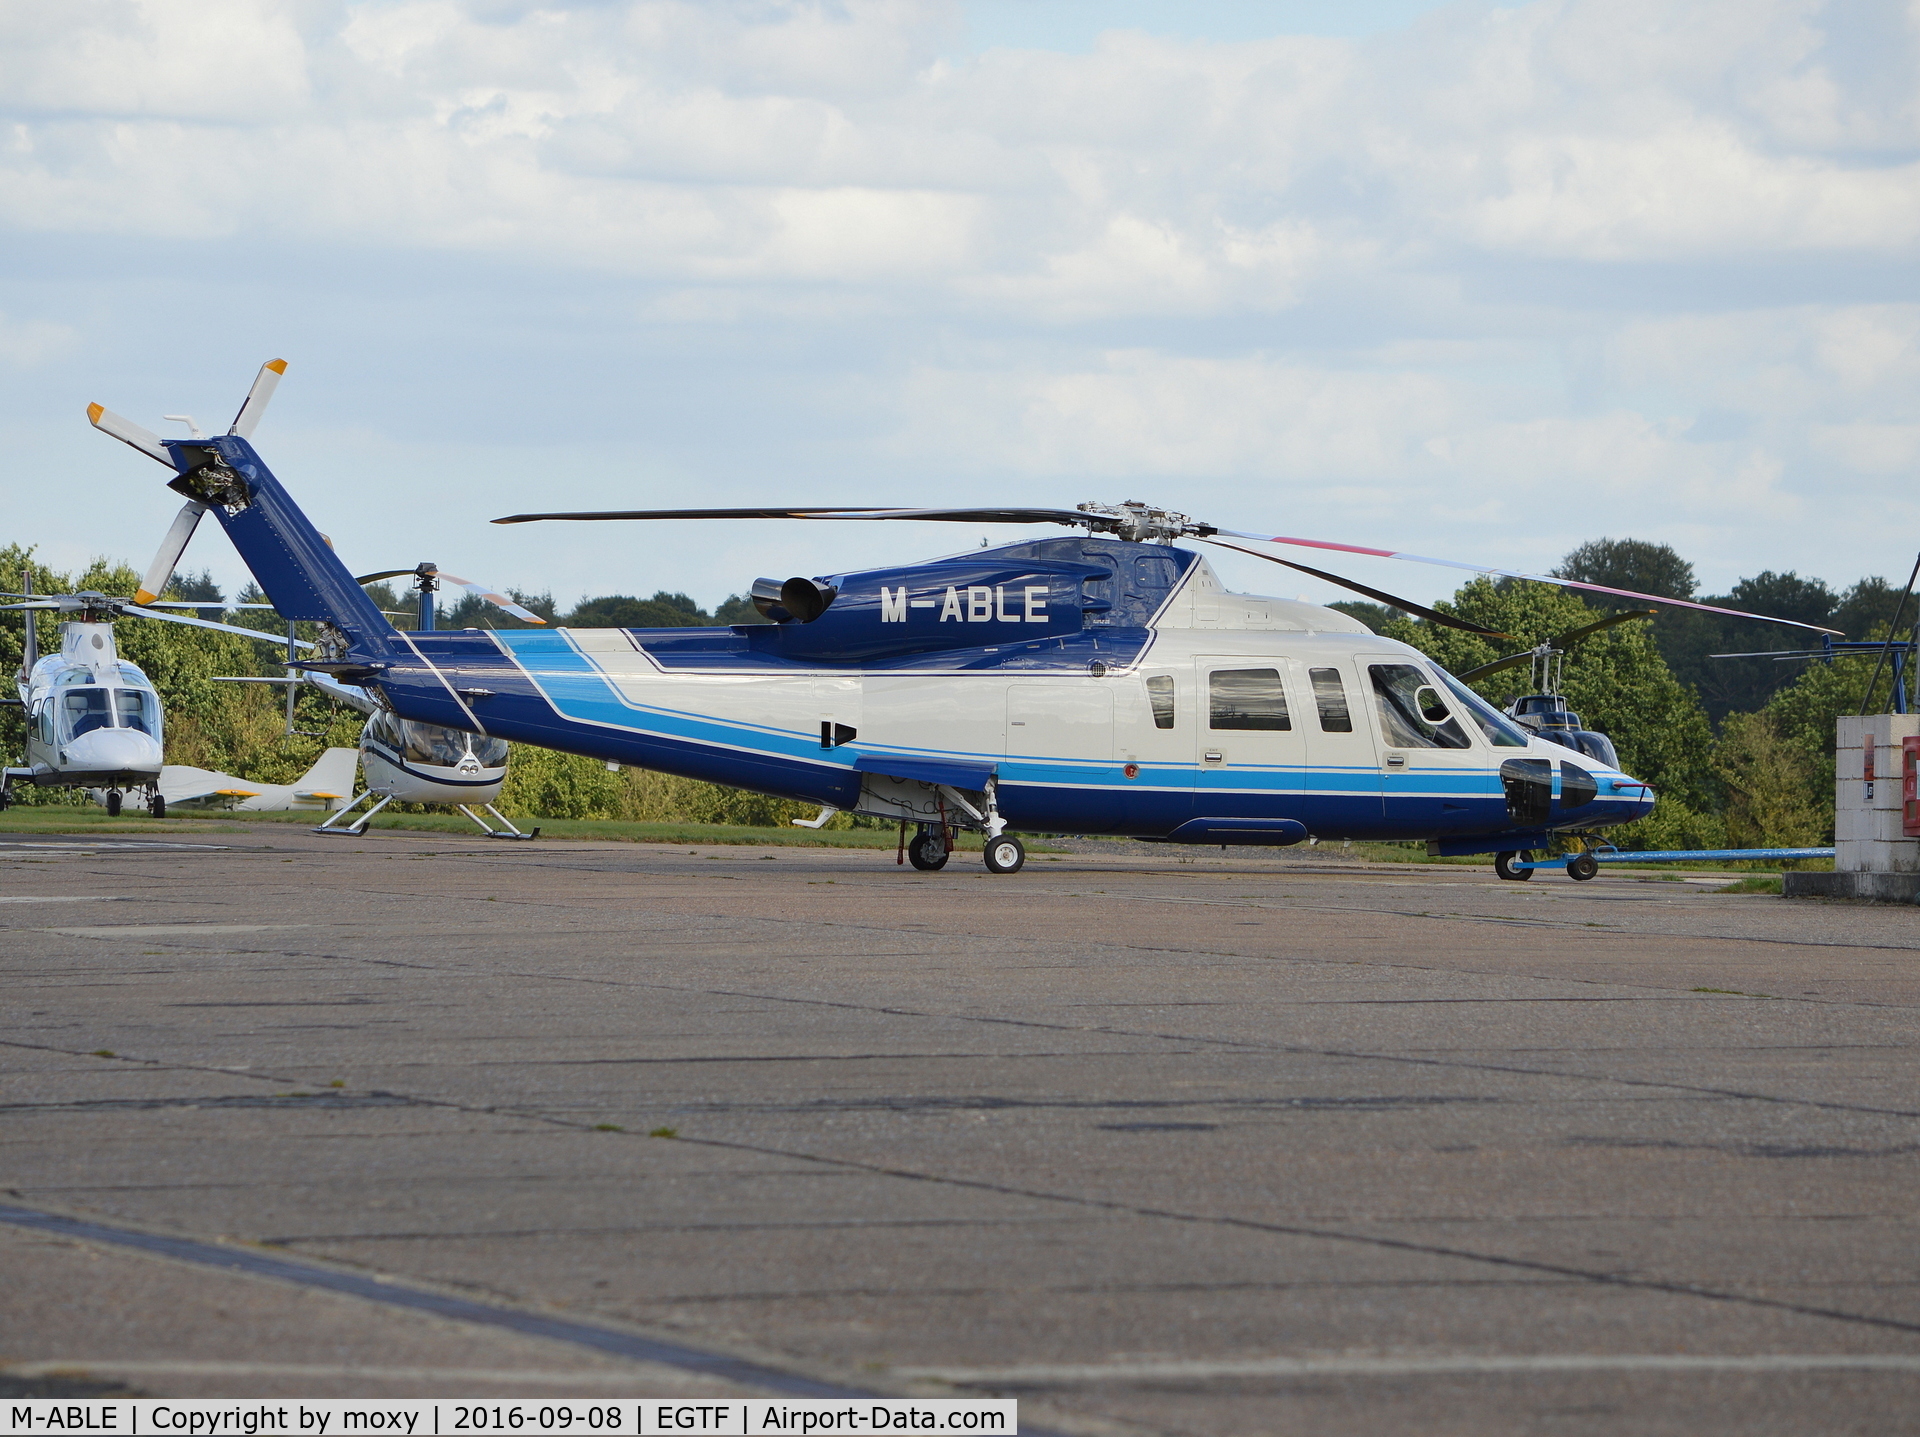 M-ABLE, 2014 Sikorsky S-76D C/N 761068, Sikorsky S-76D at Fairoaks. Ex N7668H